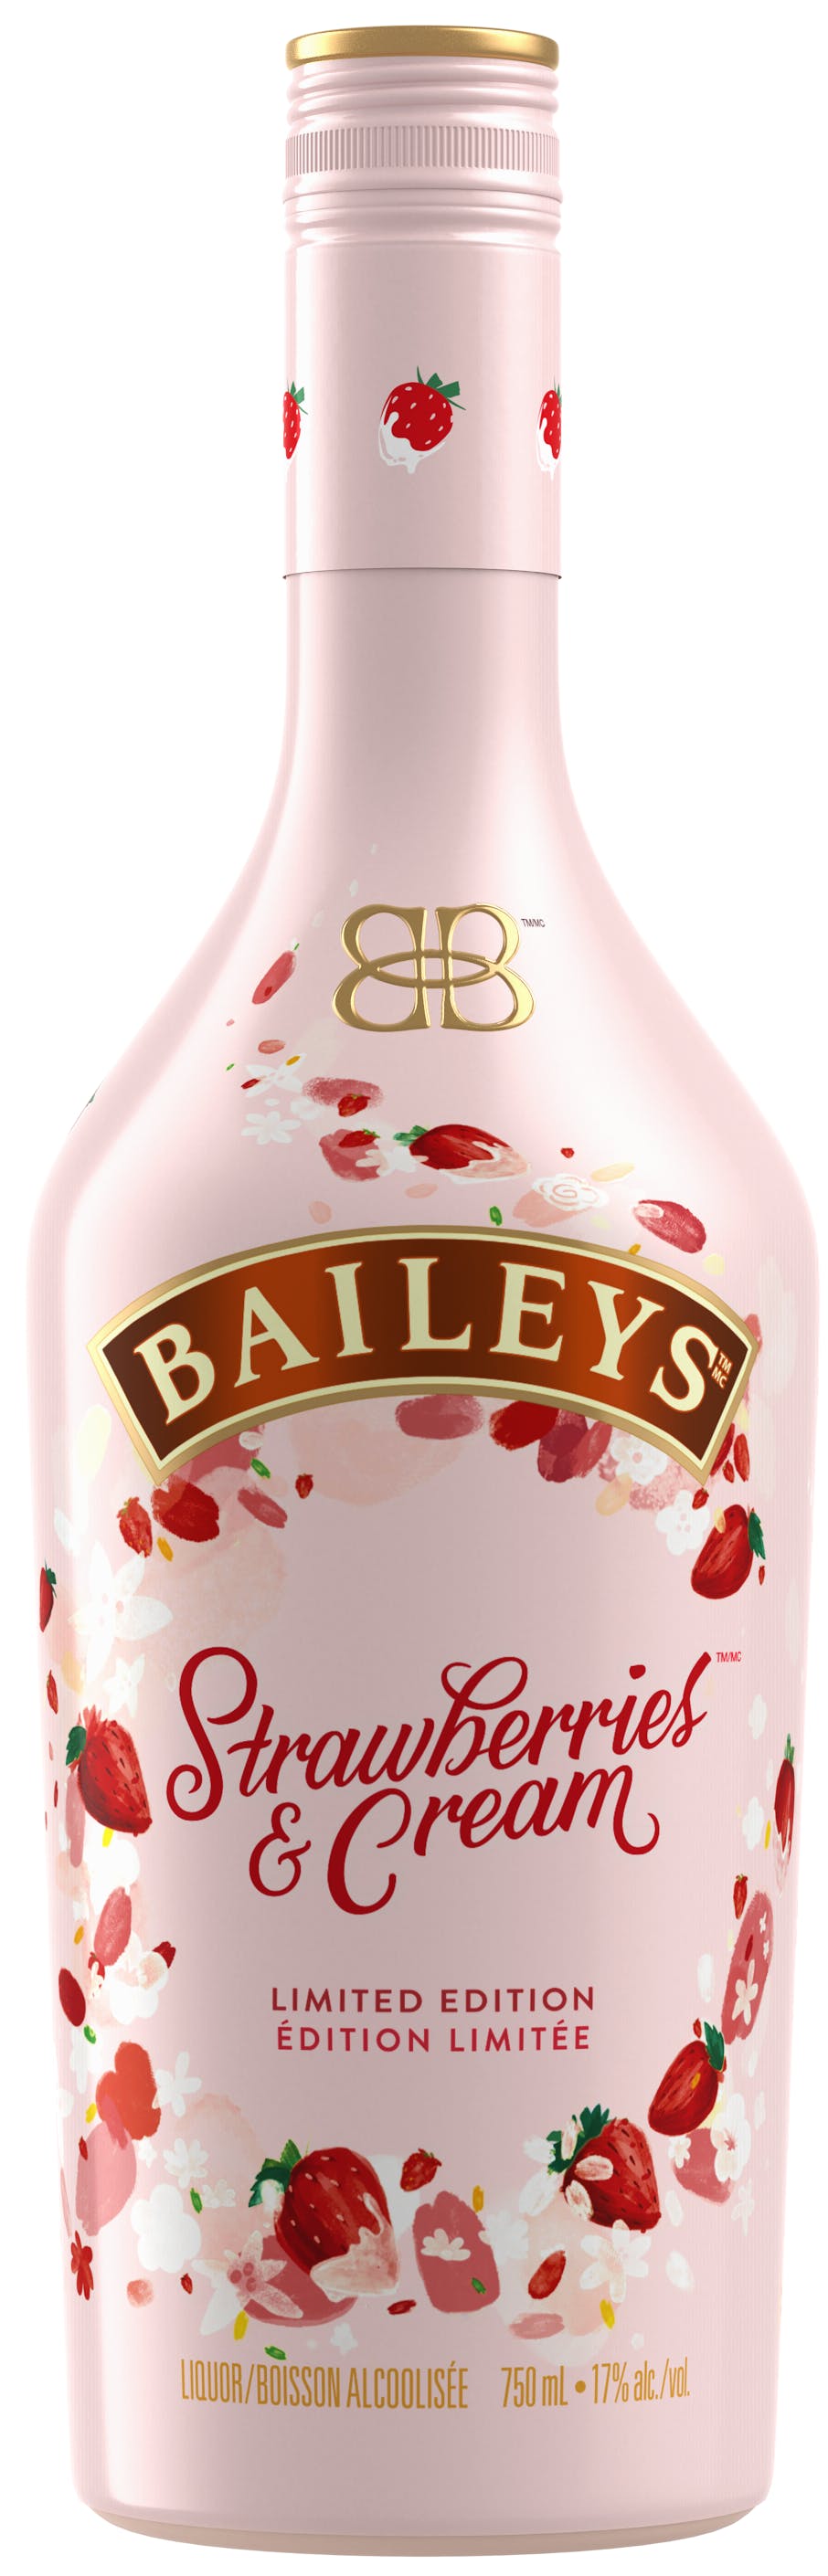 Baileys Strawberries & Cream, Fiche produit